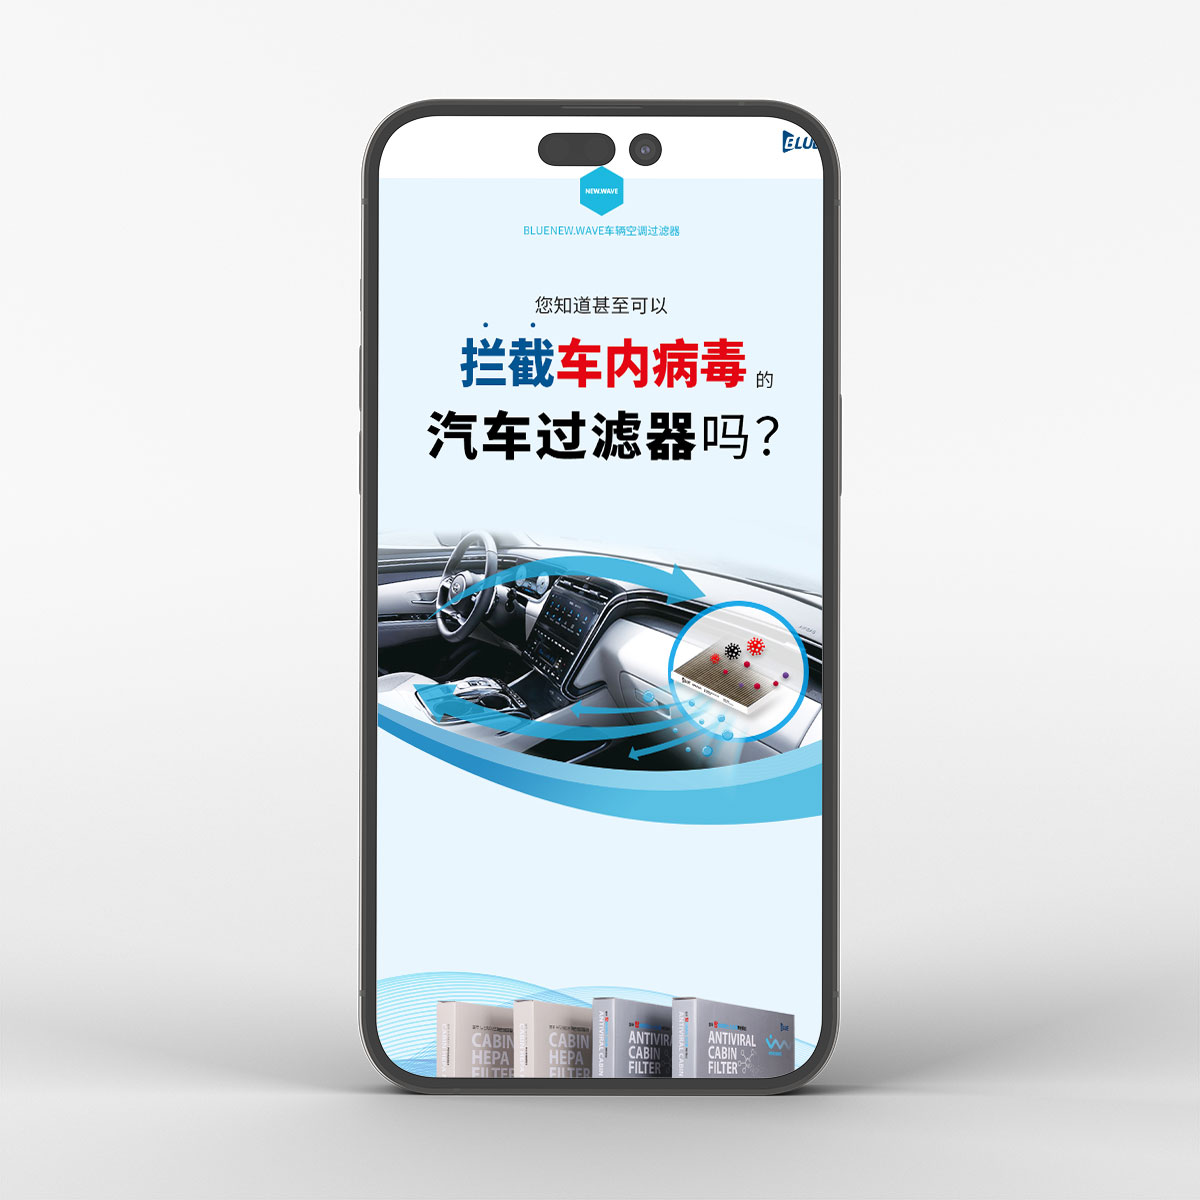 (주)블루인더스 차량용 에어컨 필터 상세페이지 중국어 버전 작업